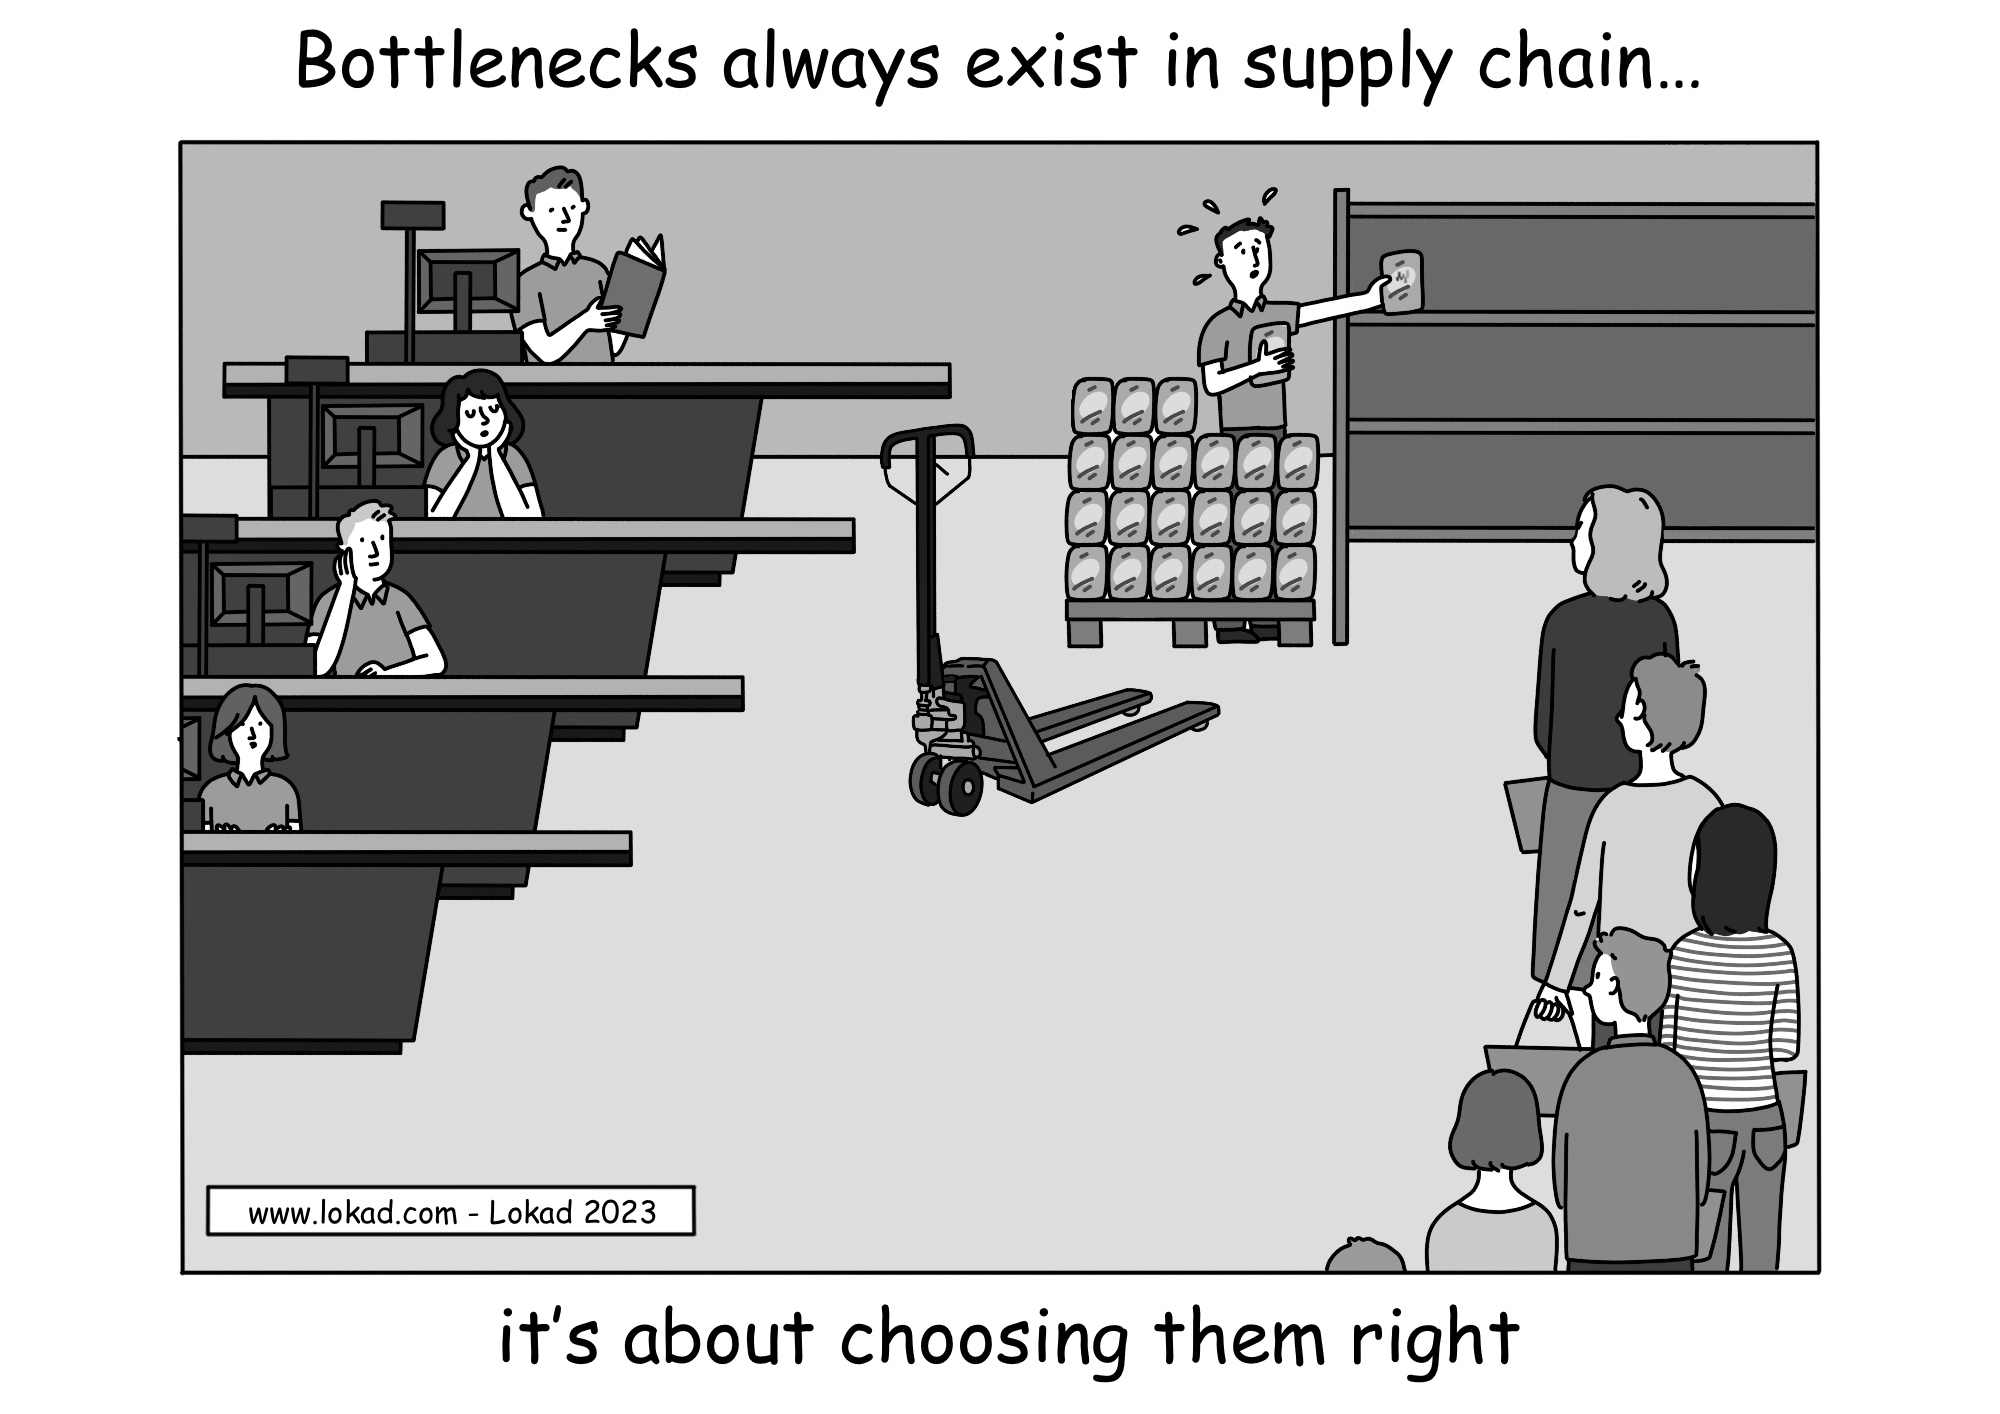 I colli di bottiglia esistono sempre nella supply chain